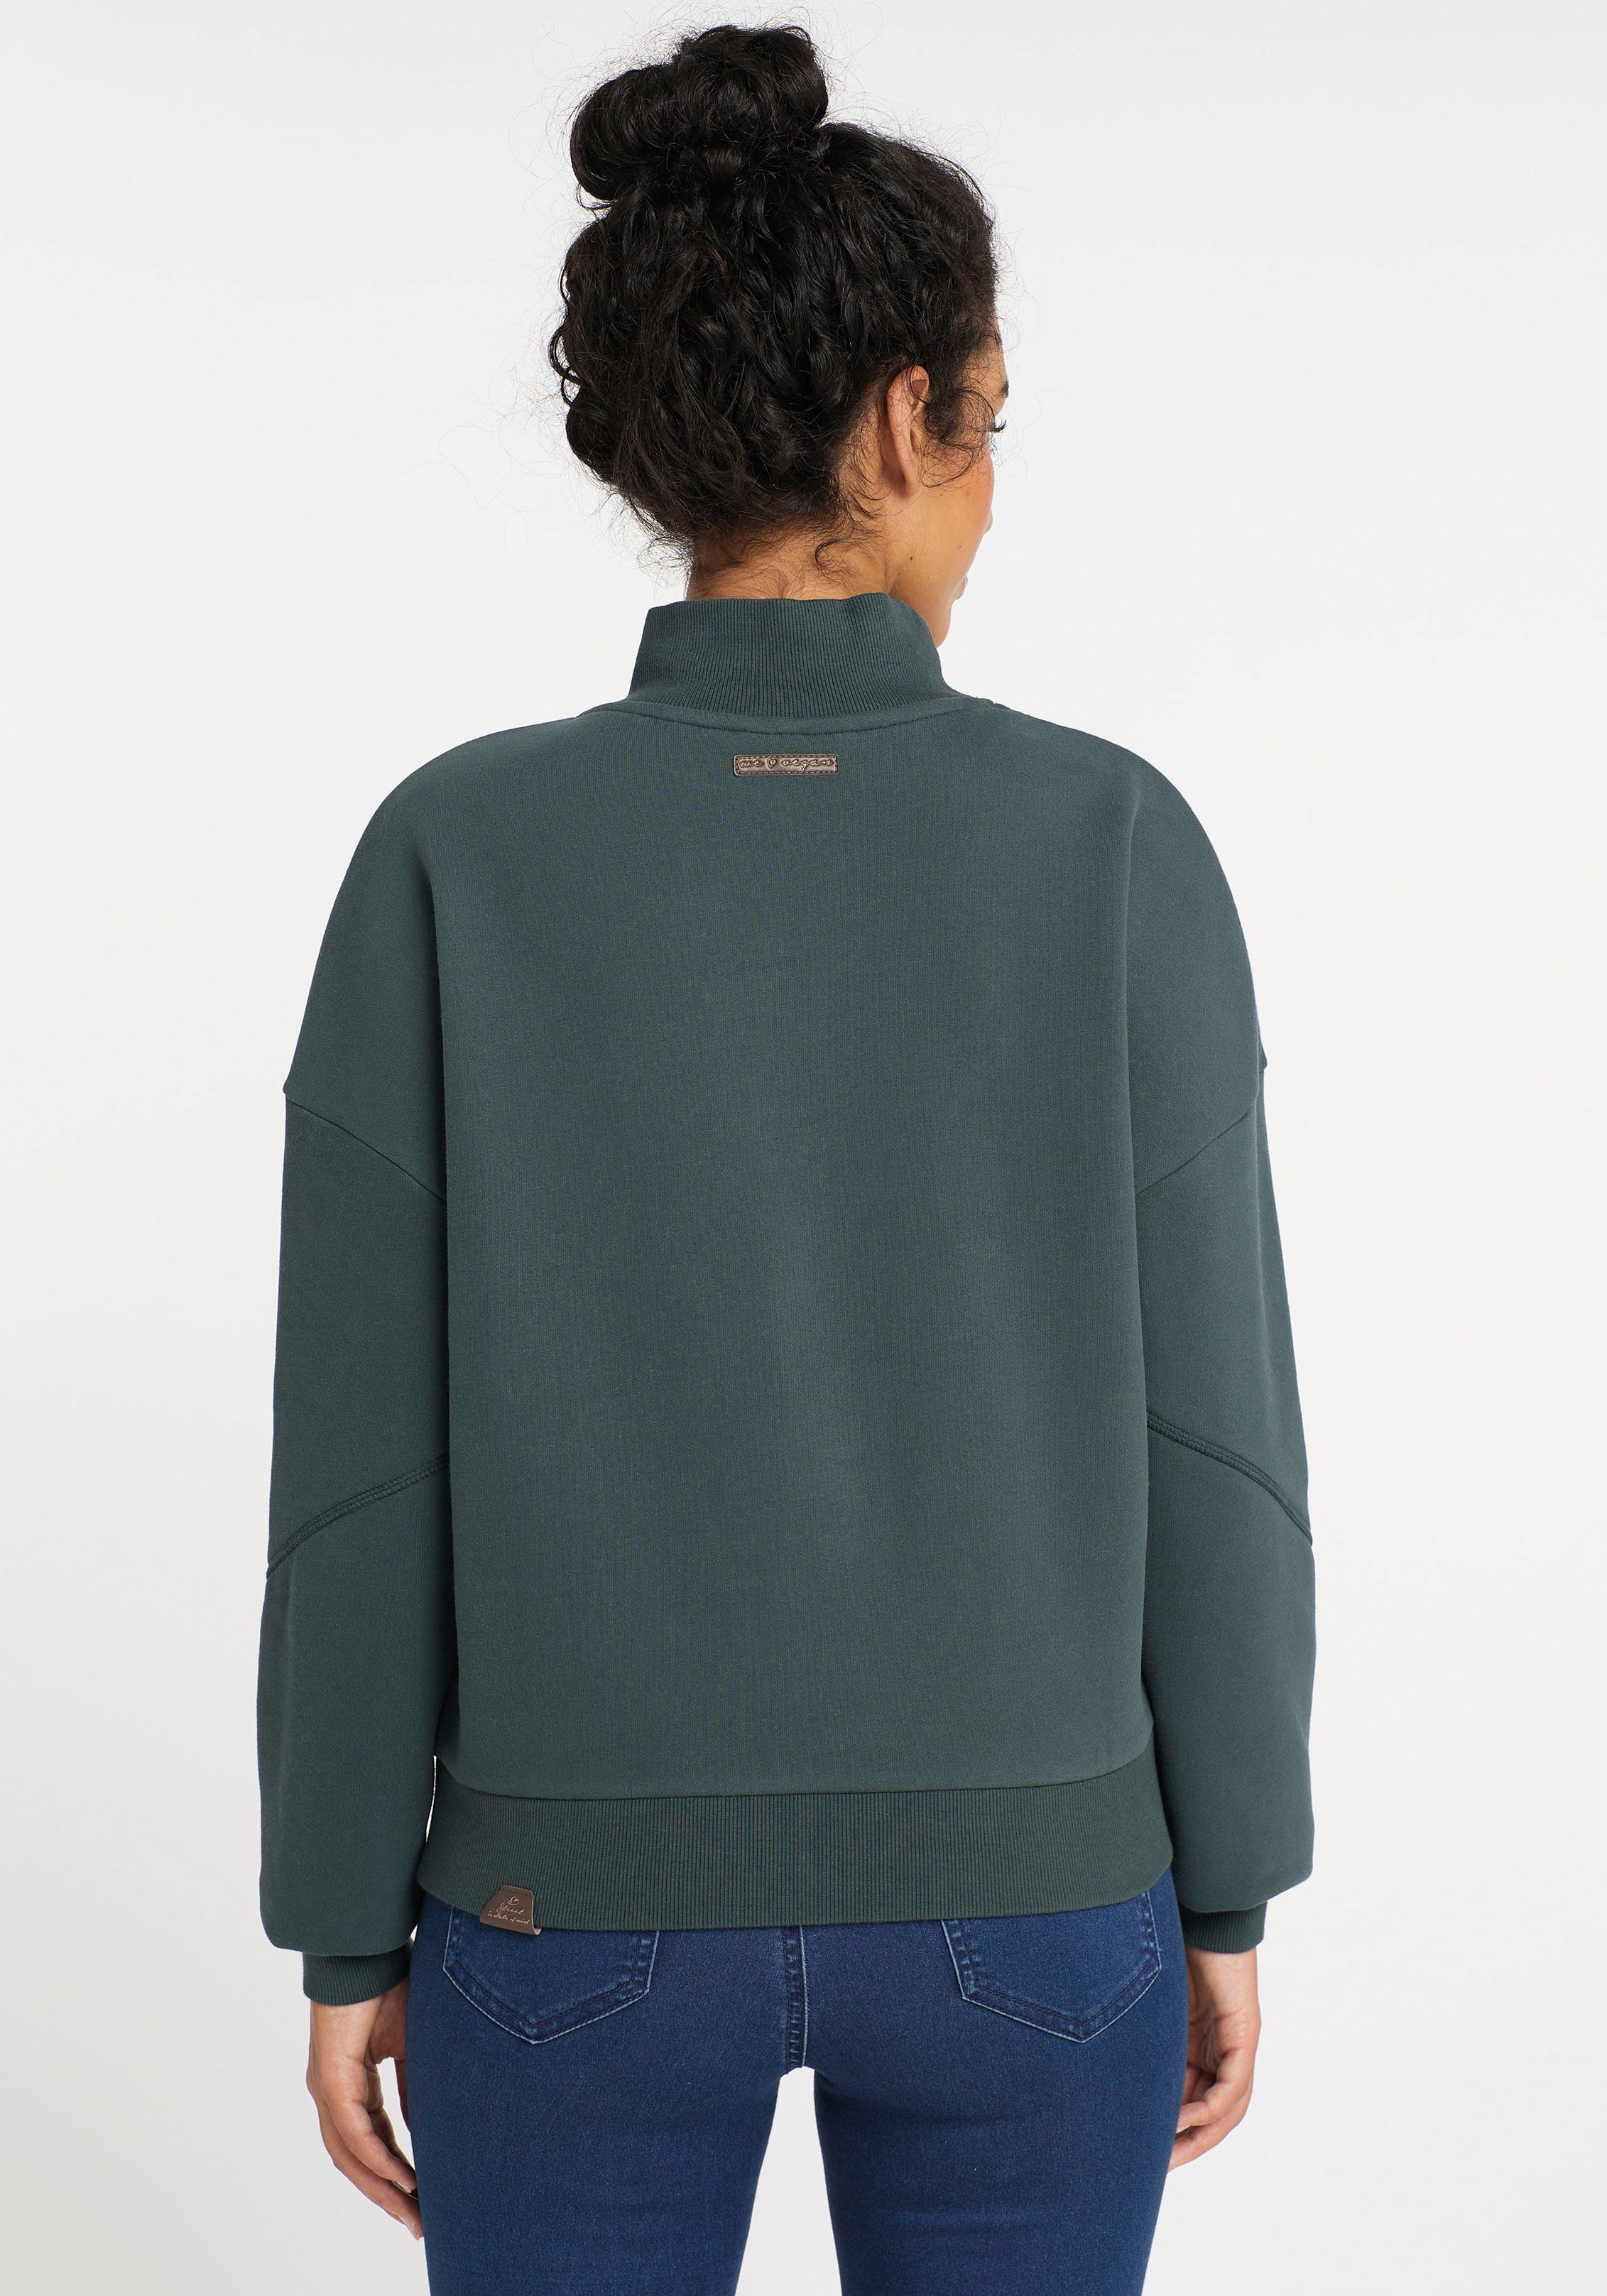 Ragwear Sweater SWEAT dark 5021 KAILA green